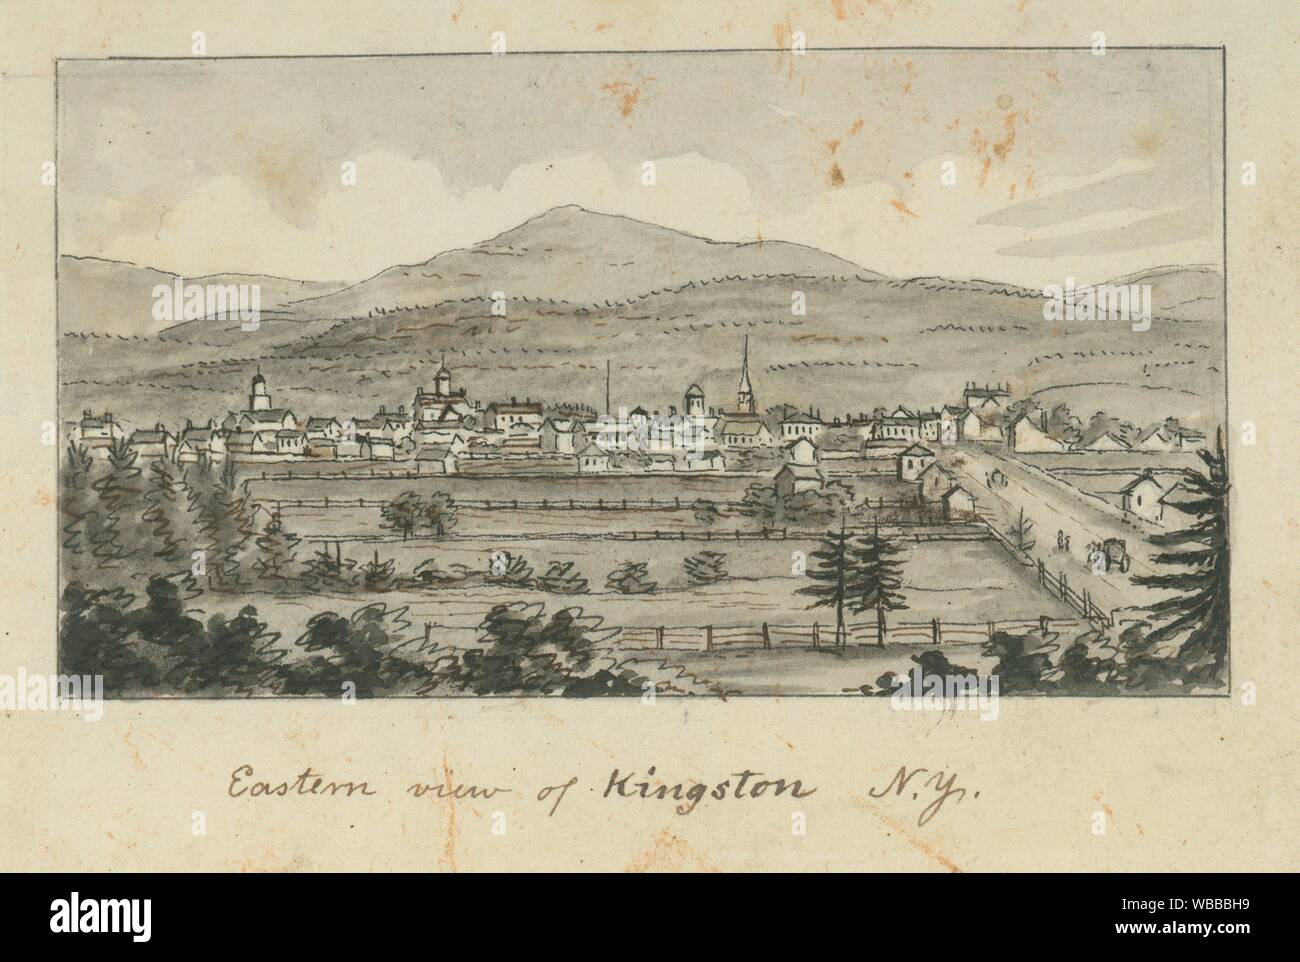 Vista oriental de Kingston N.Y. Barber, John Warner (1798-1885) (artista). I. N. Phelps Stokes Colección de Estampas históricas americanas individuo Foto de stock